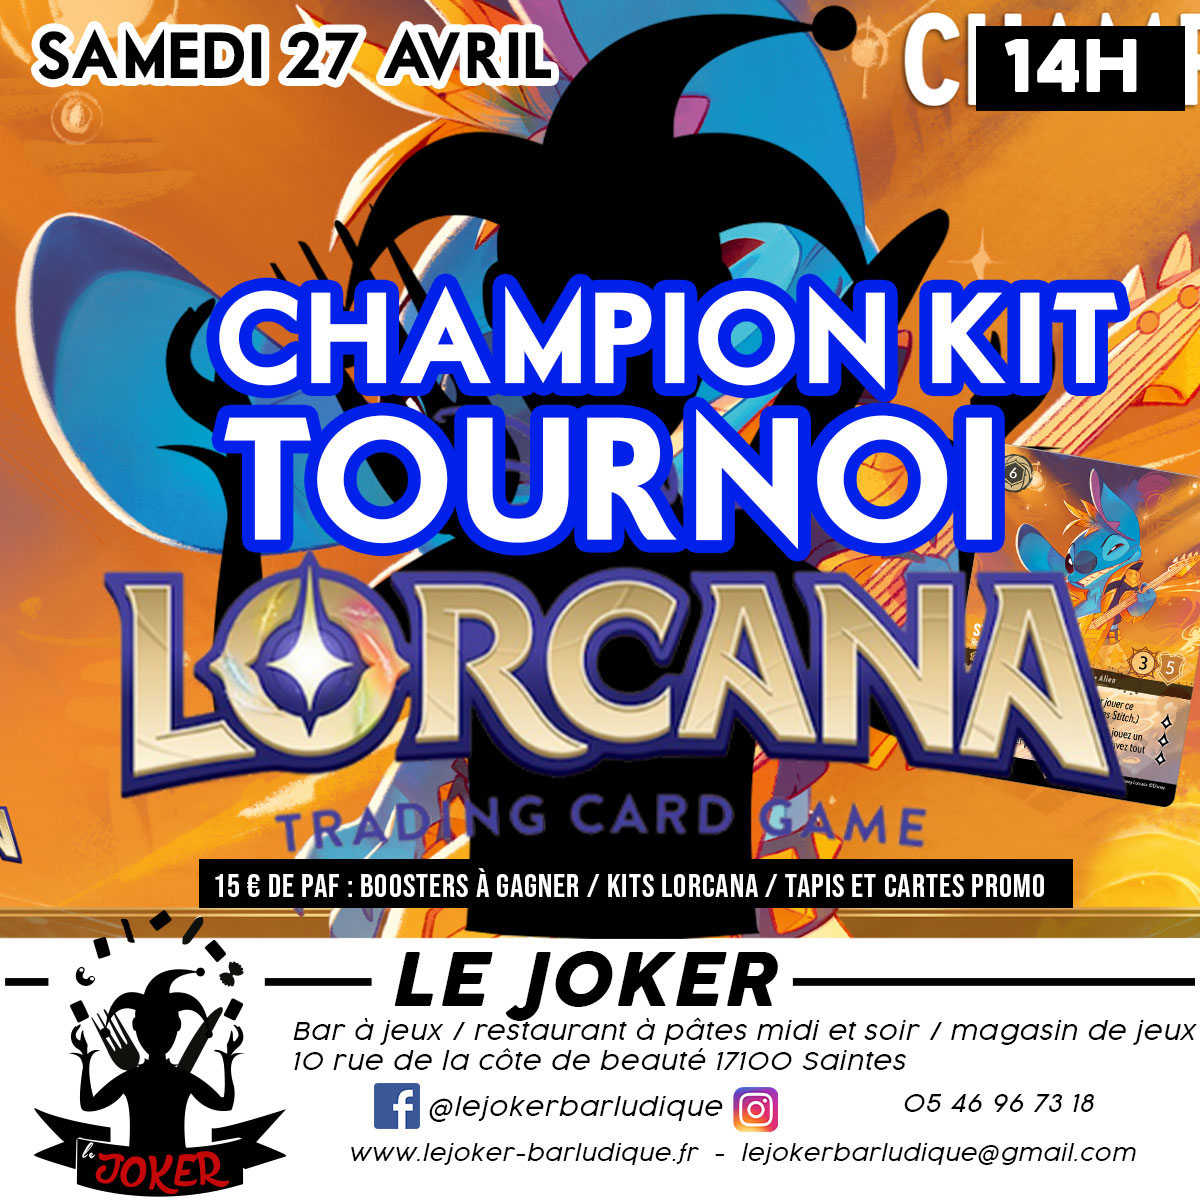 TOURNOI CHAMPION KIT LORCANA  - Le Joker - Bar ludique et restaurant à pâtes - Saintes